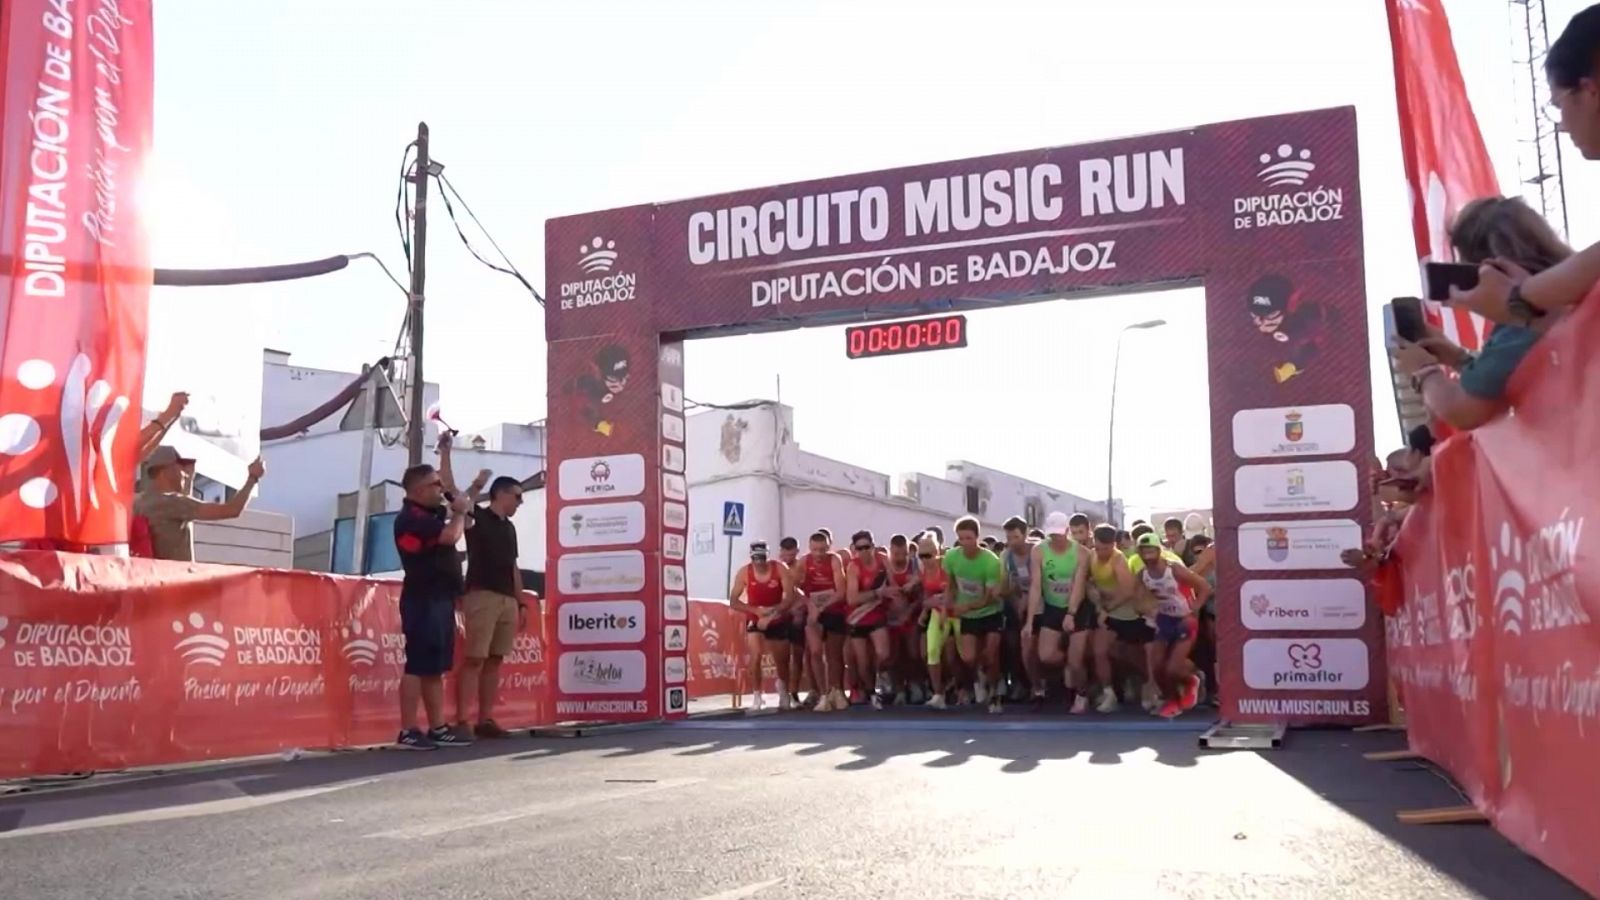 Circuito Music Run España - Music Run Almendralejo